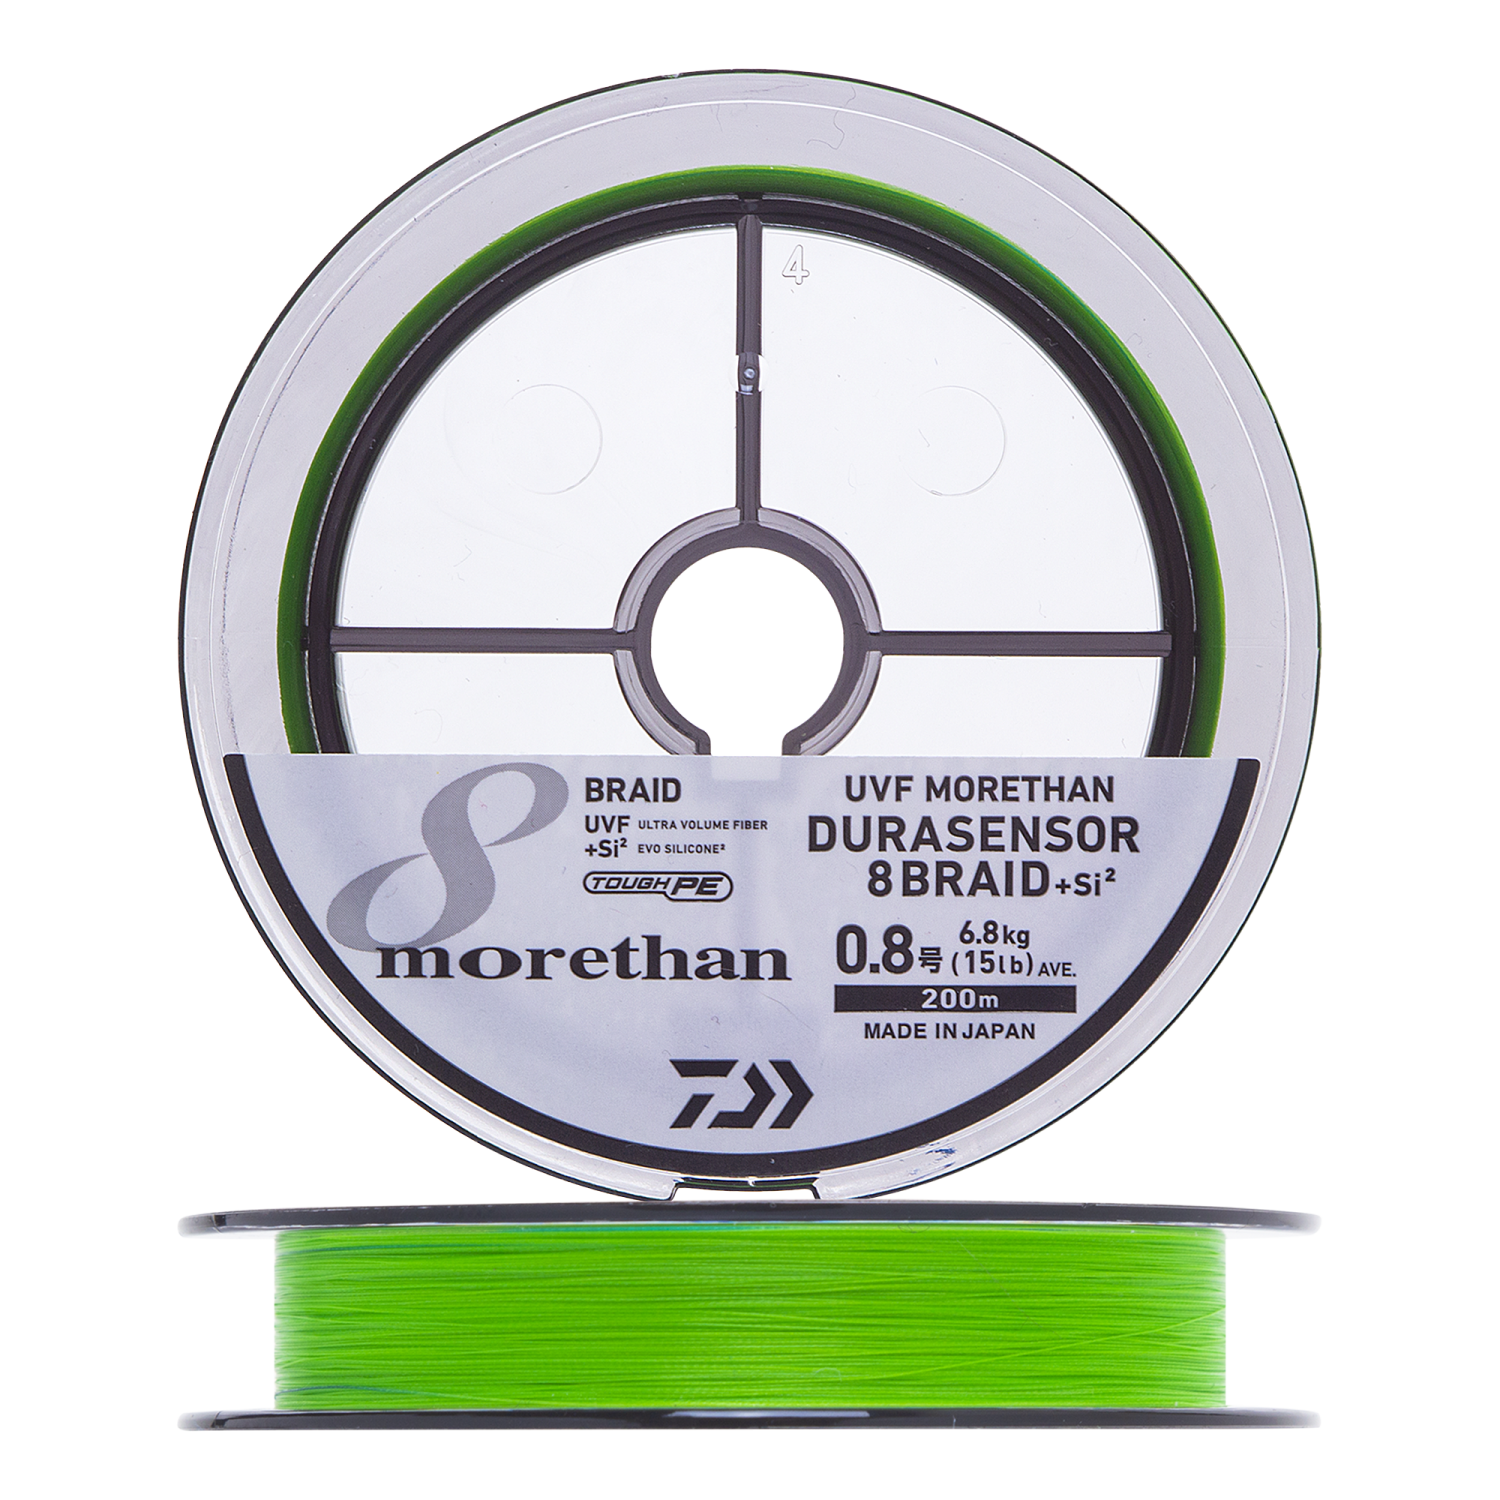 Шнур плетеный Daiwa UVF Morethan Durasensor 8Braid +Si2 #0,8 0,148мм 200м (lime green+marking)